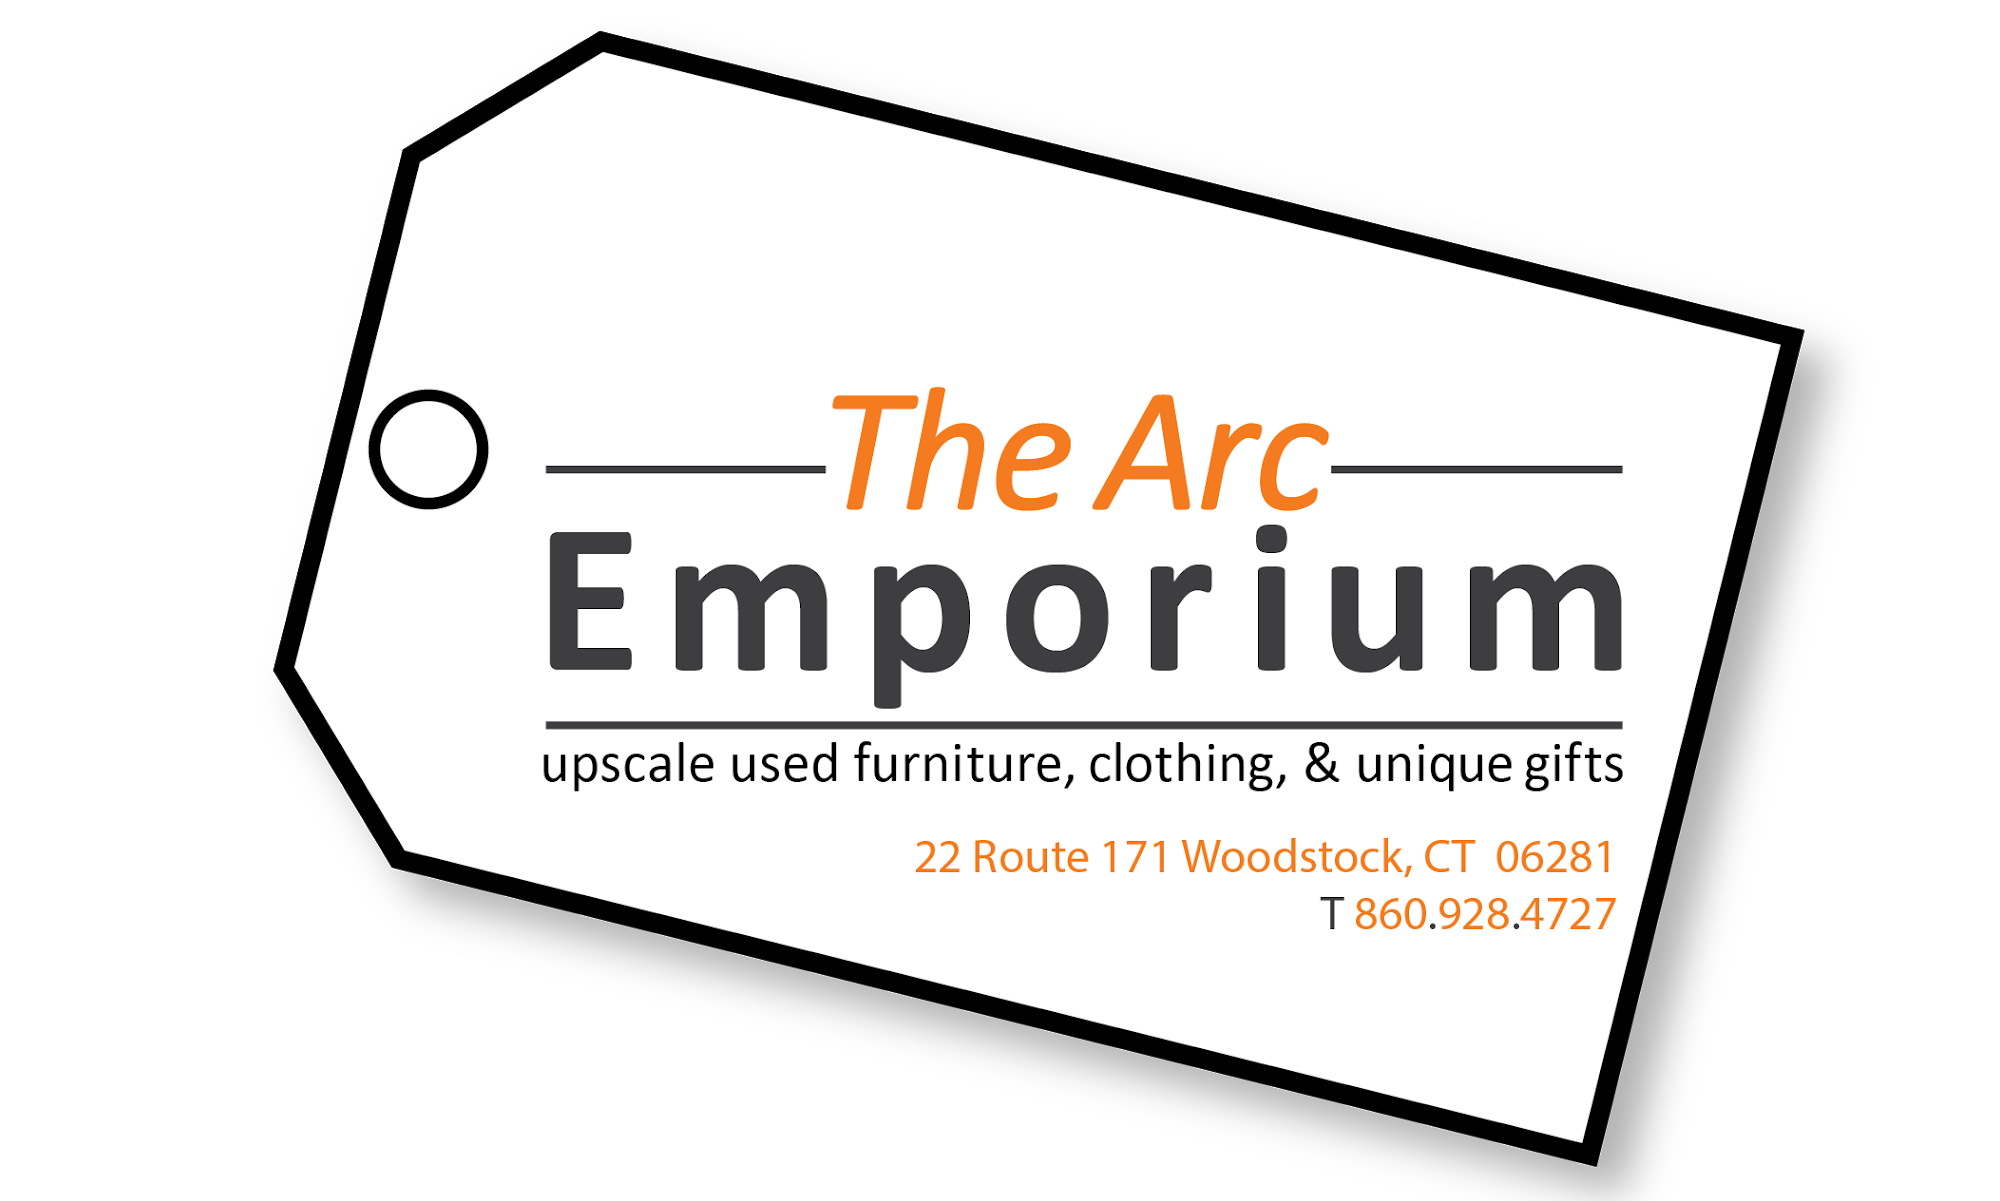 The Arc Emporium